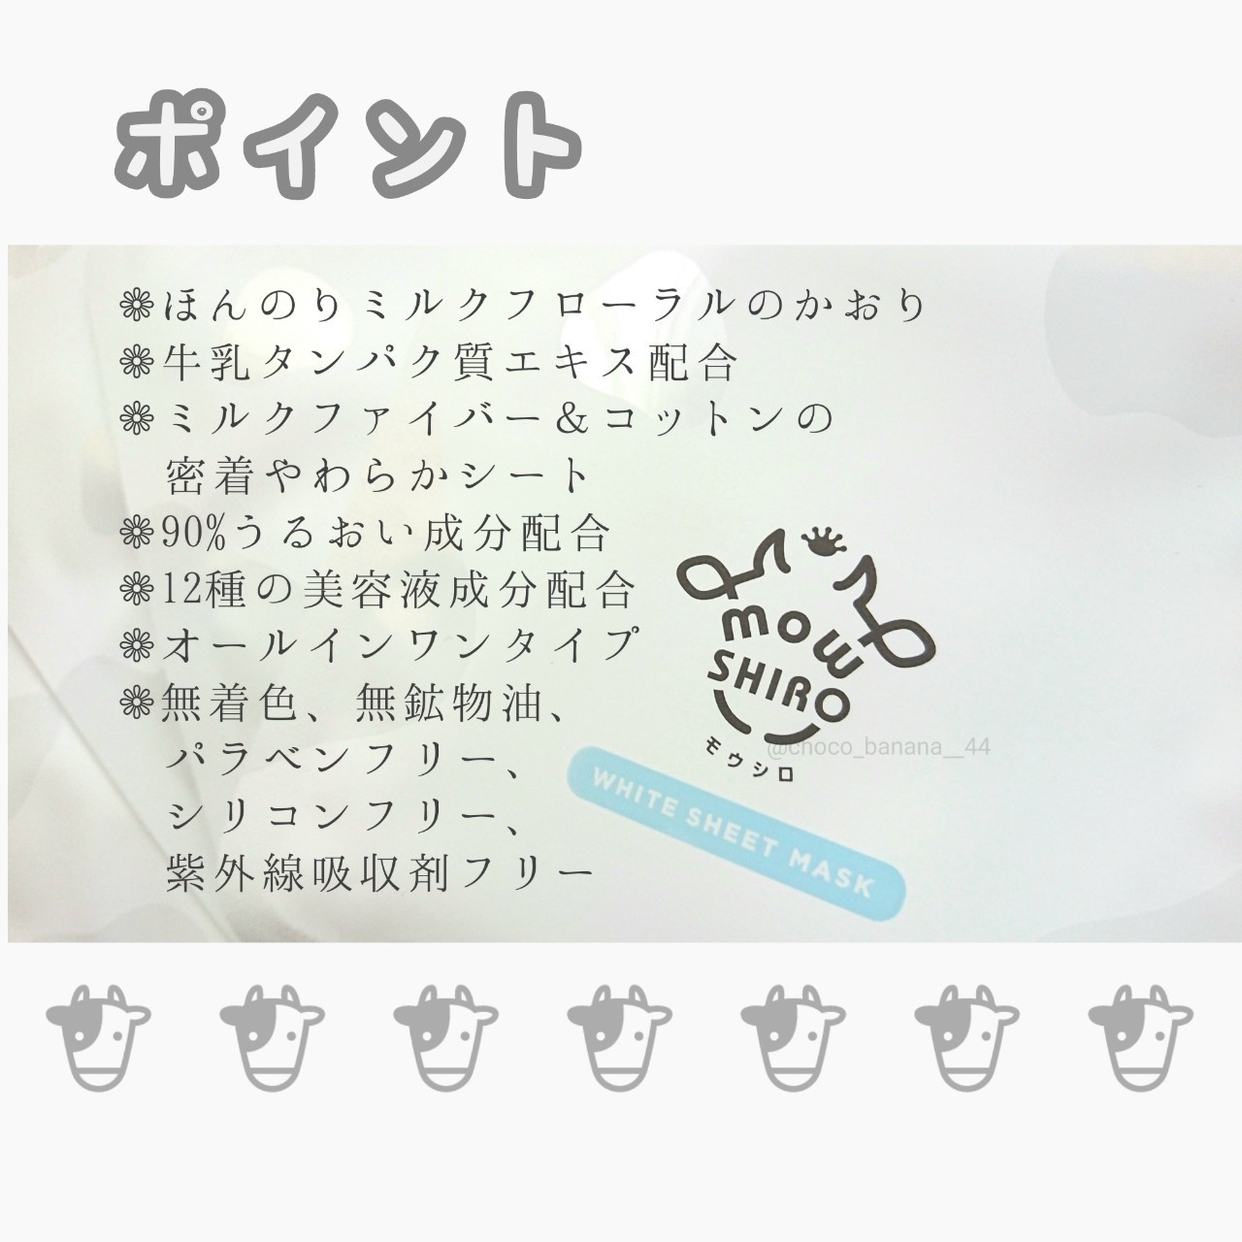 mowSHIRO(モウシロ) ホワイト シートマスクに関するししさんの口コミ画像3